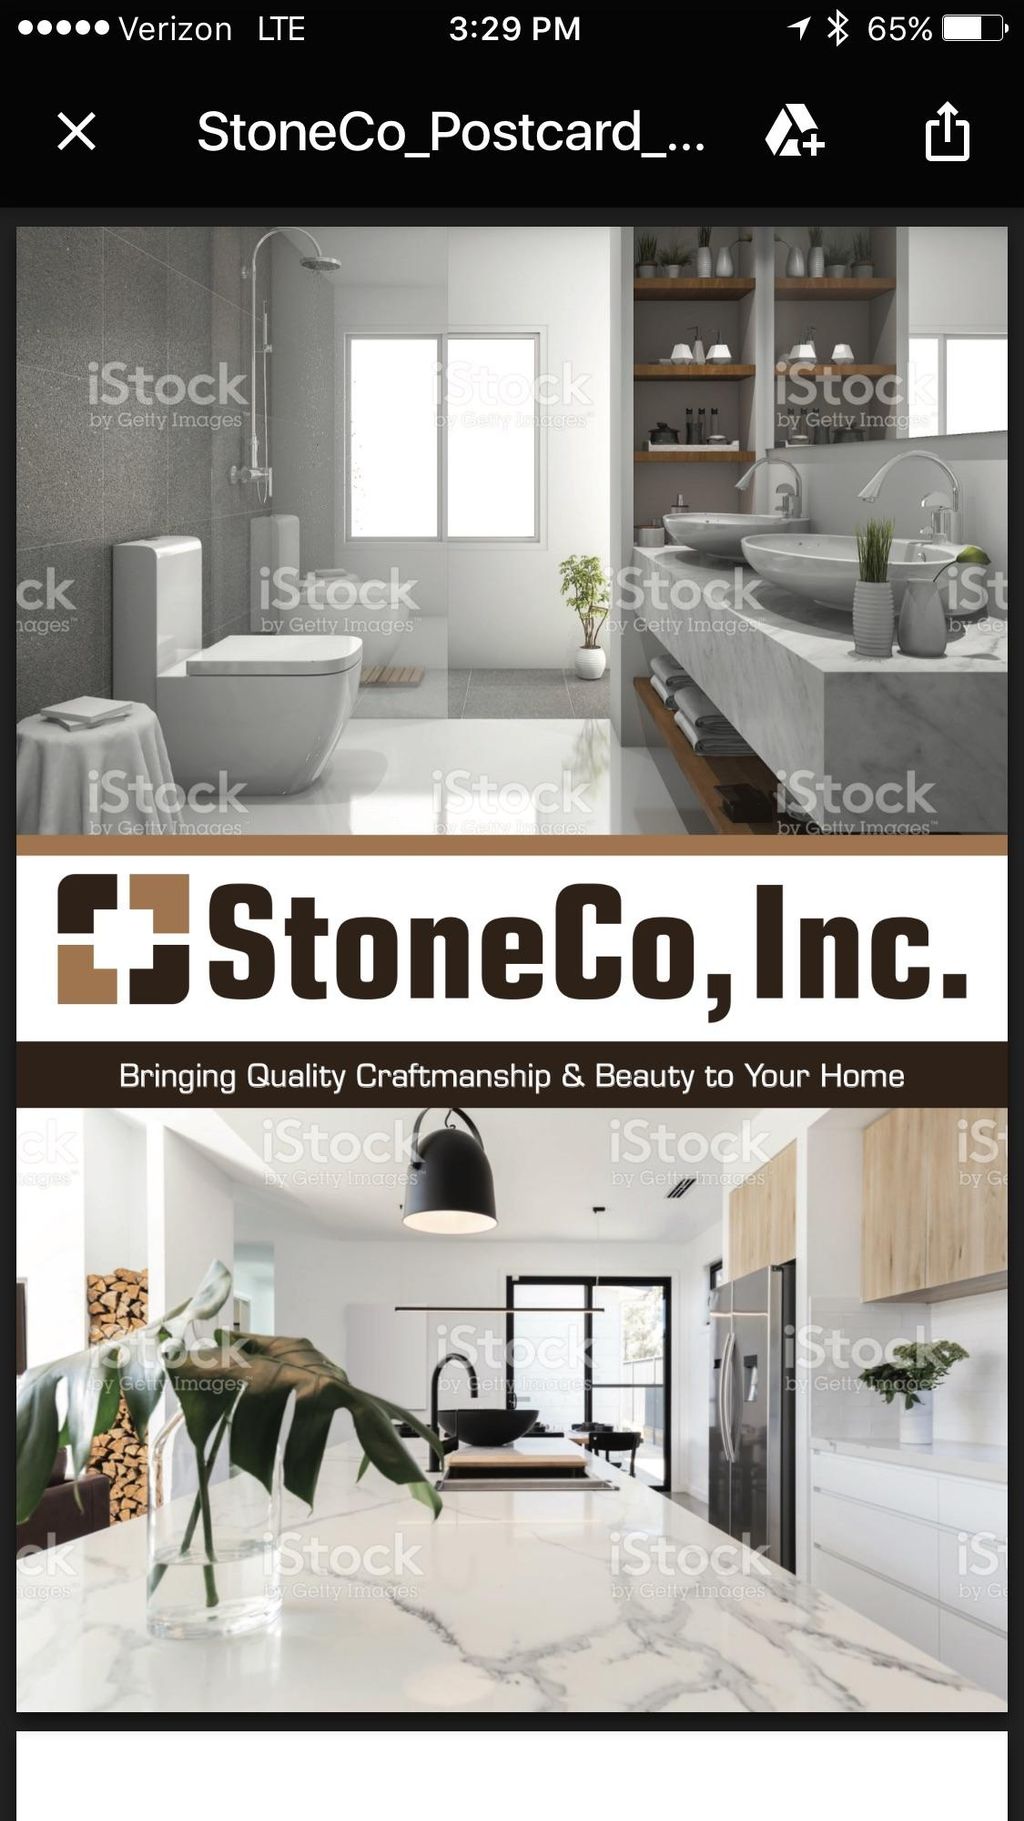 StoneCo Inc